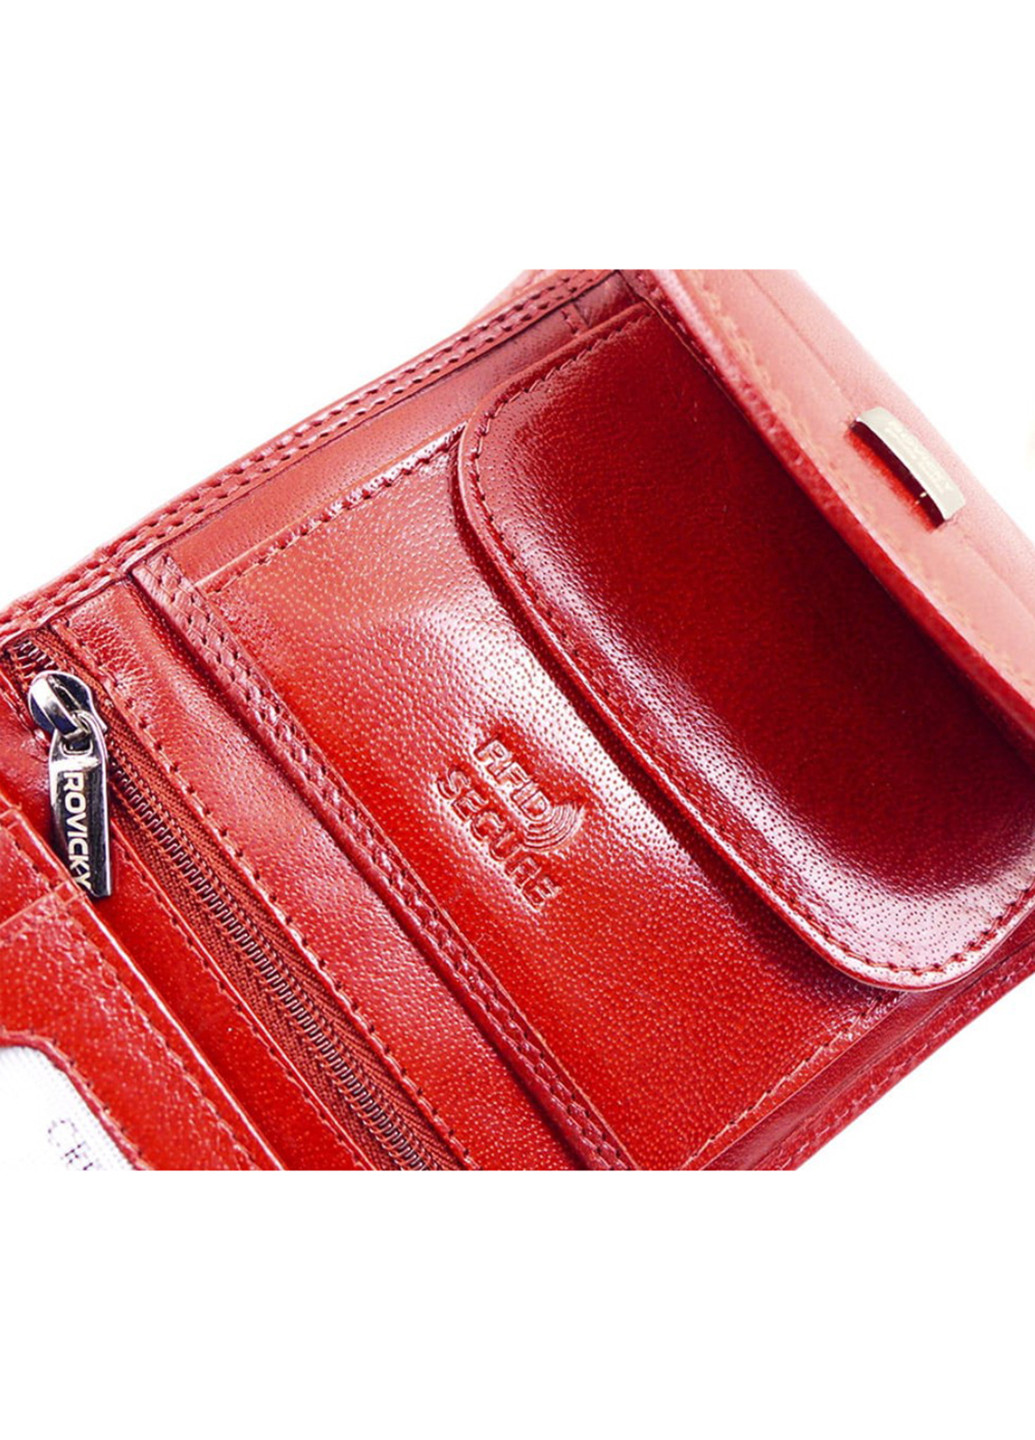 Женский кожаный кошелек маленький красный СPR-8770-BAR Red Rovicky однотонный красный деловой